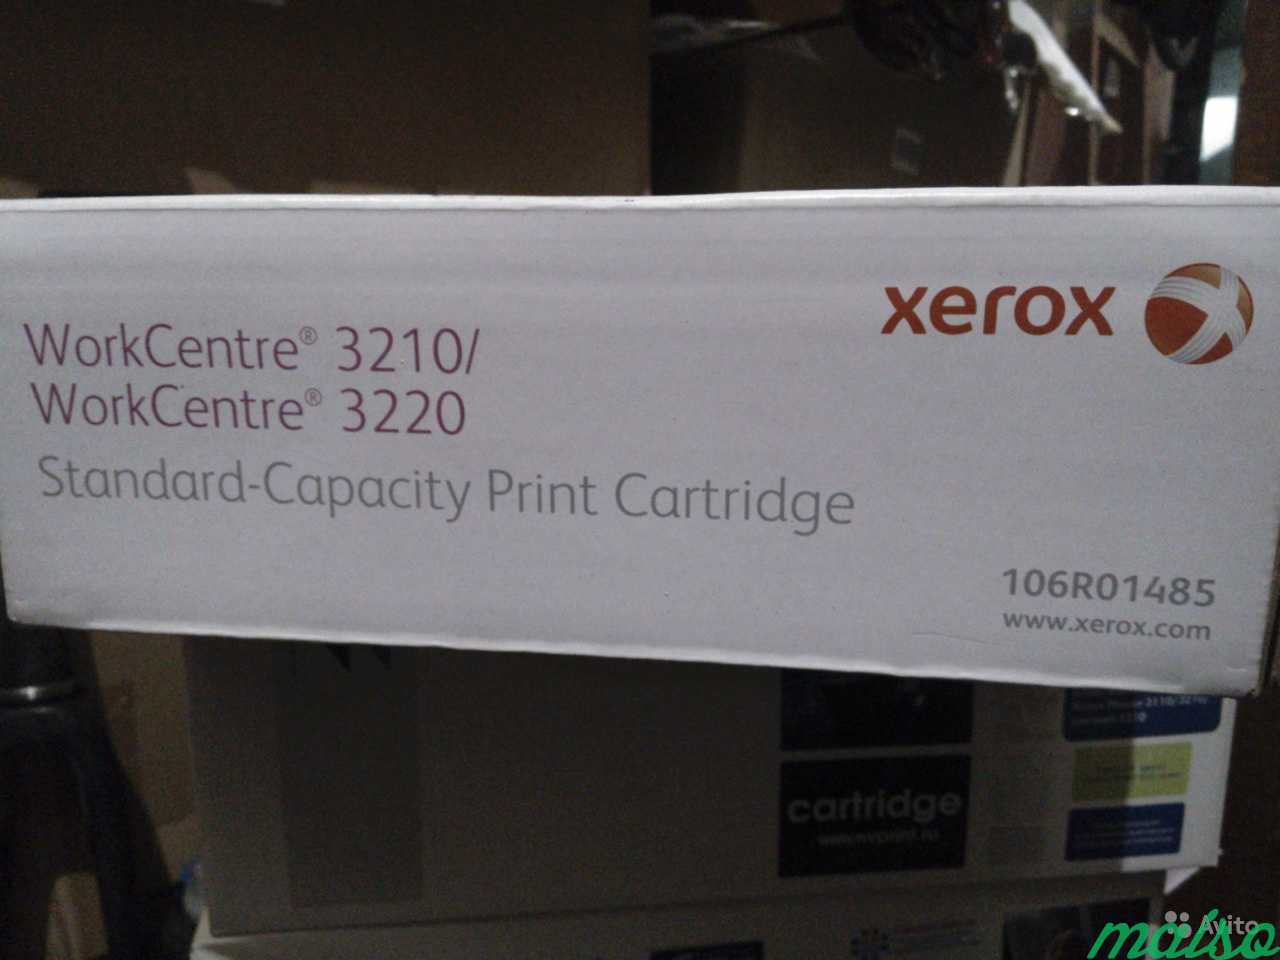 Картридж Xerox 106R01485 для WorkCentre 3210, 3220 в Санкт-Петербурге. Фото 2